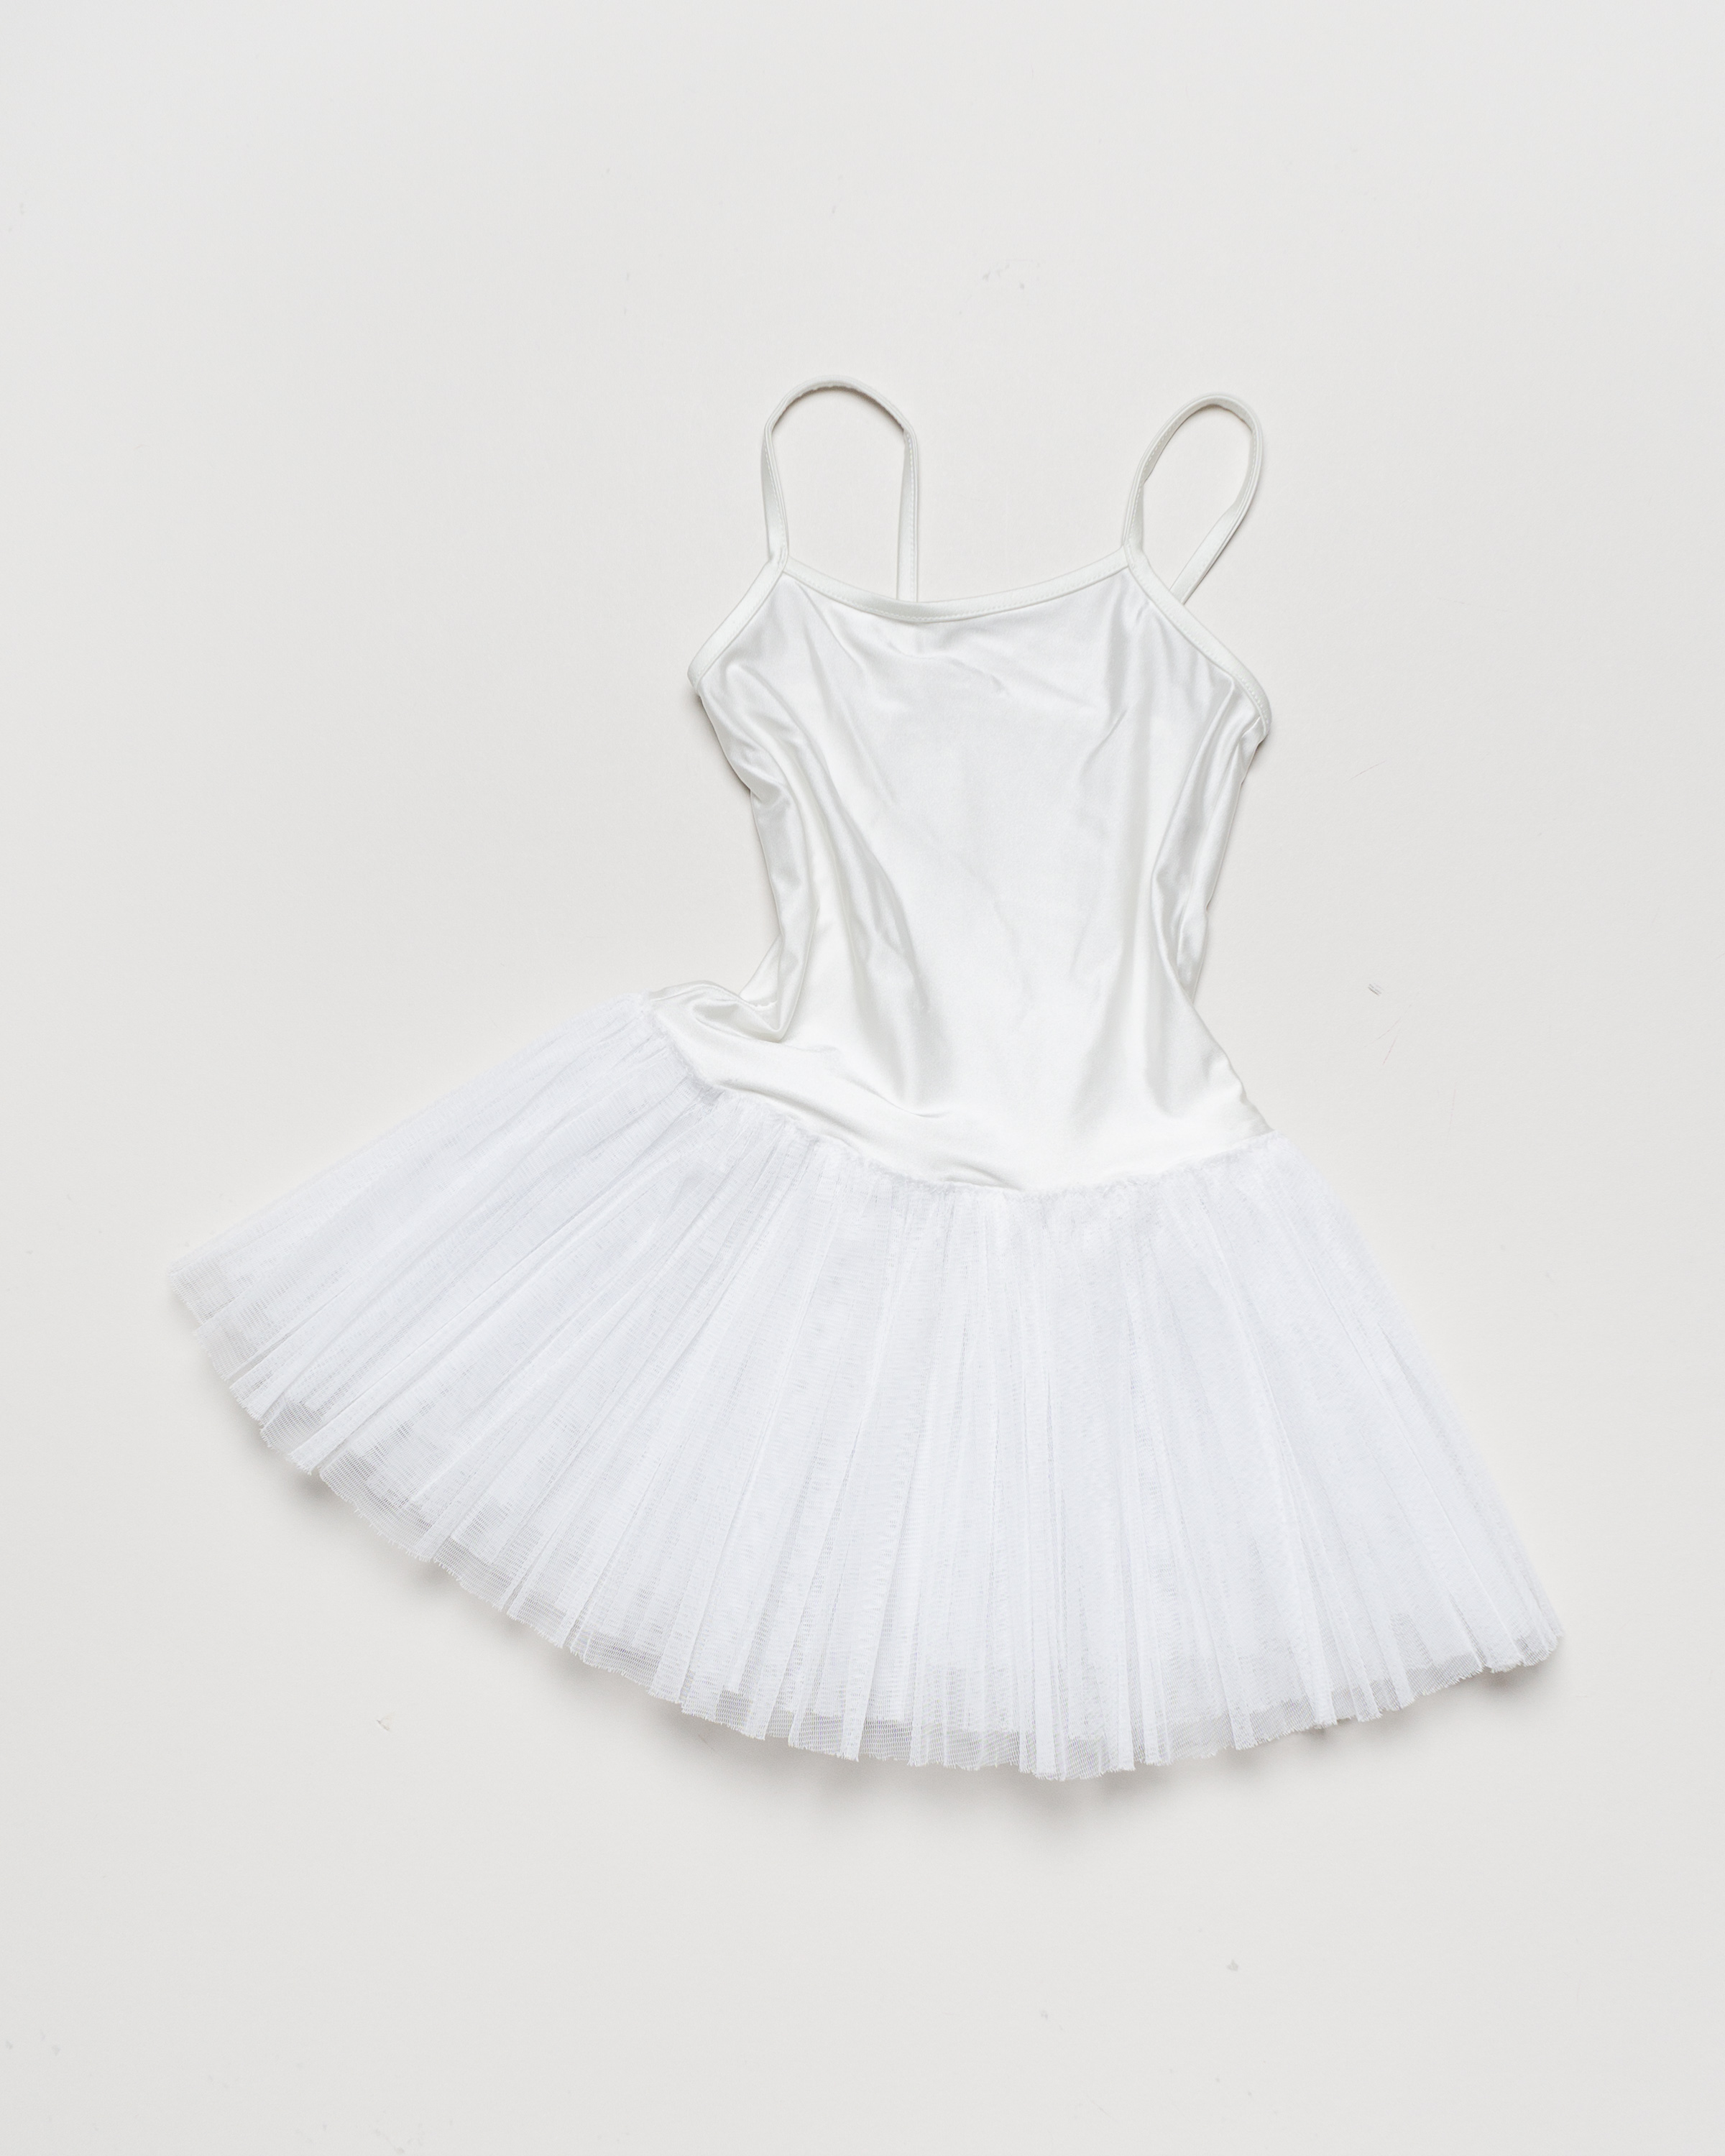 1 Teil Gr. 134/140 - Kostüm Karneval Fasching Kleid Ballett Weiß